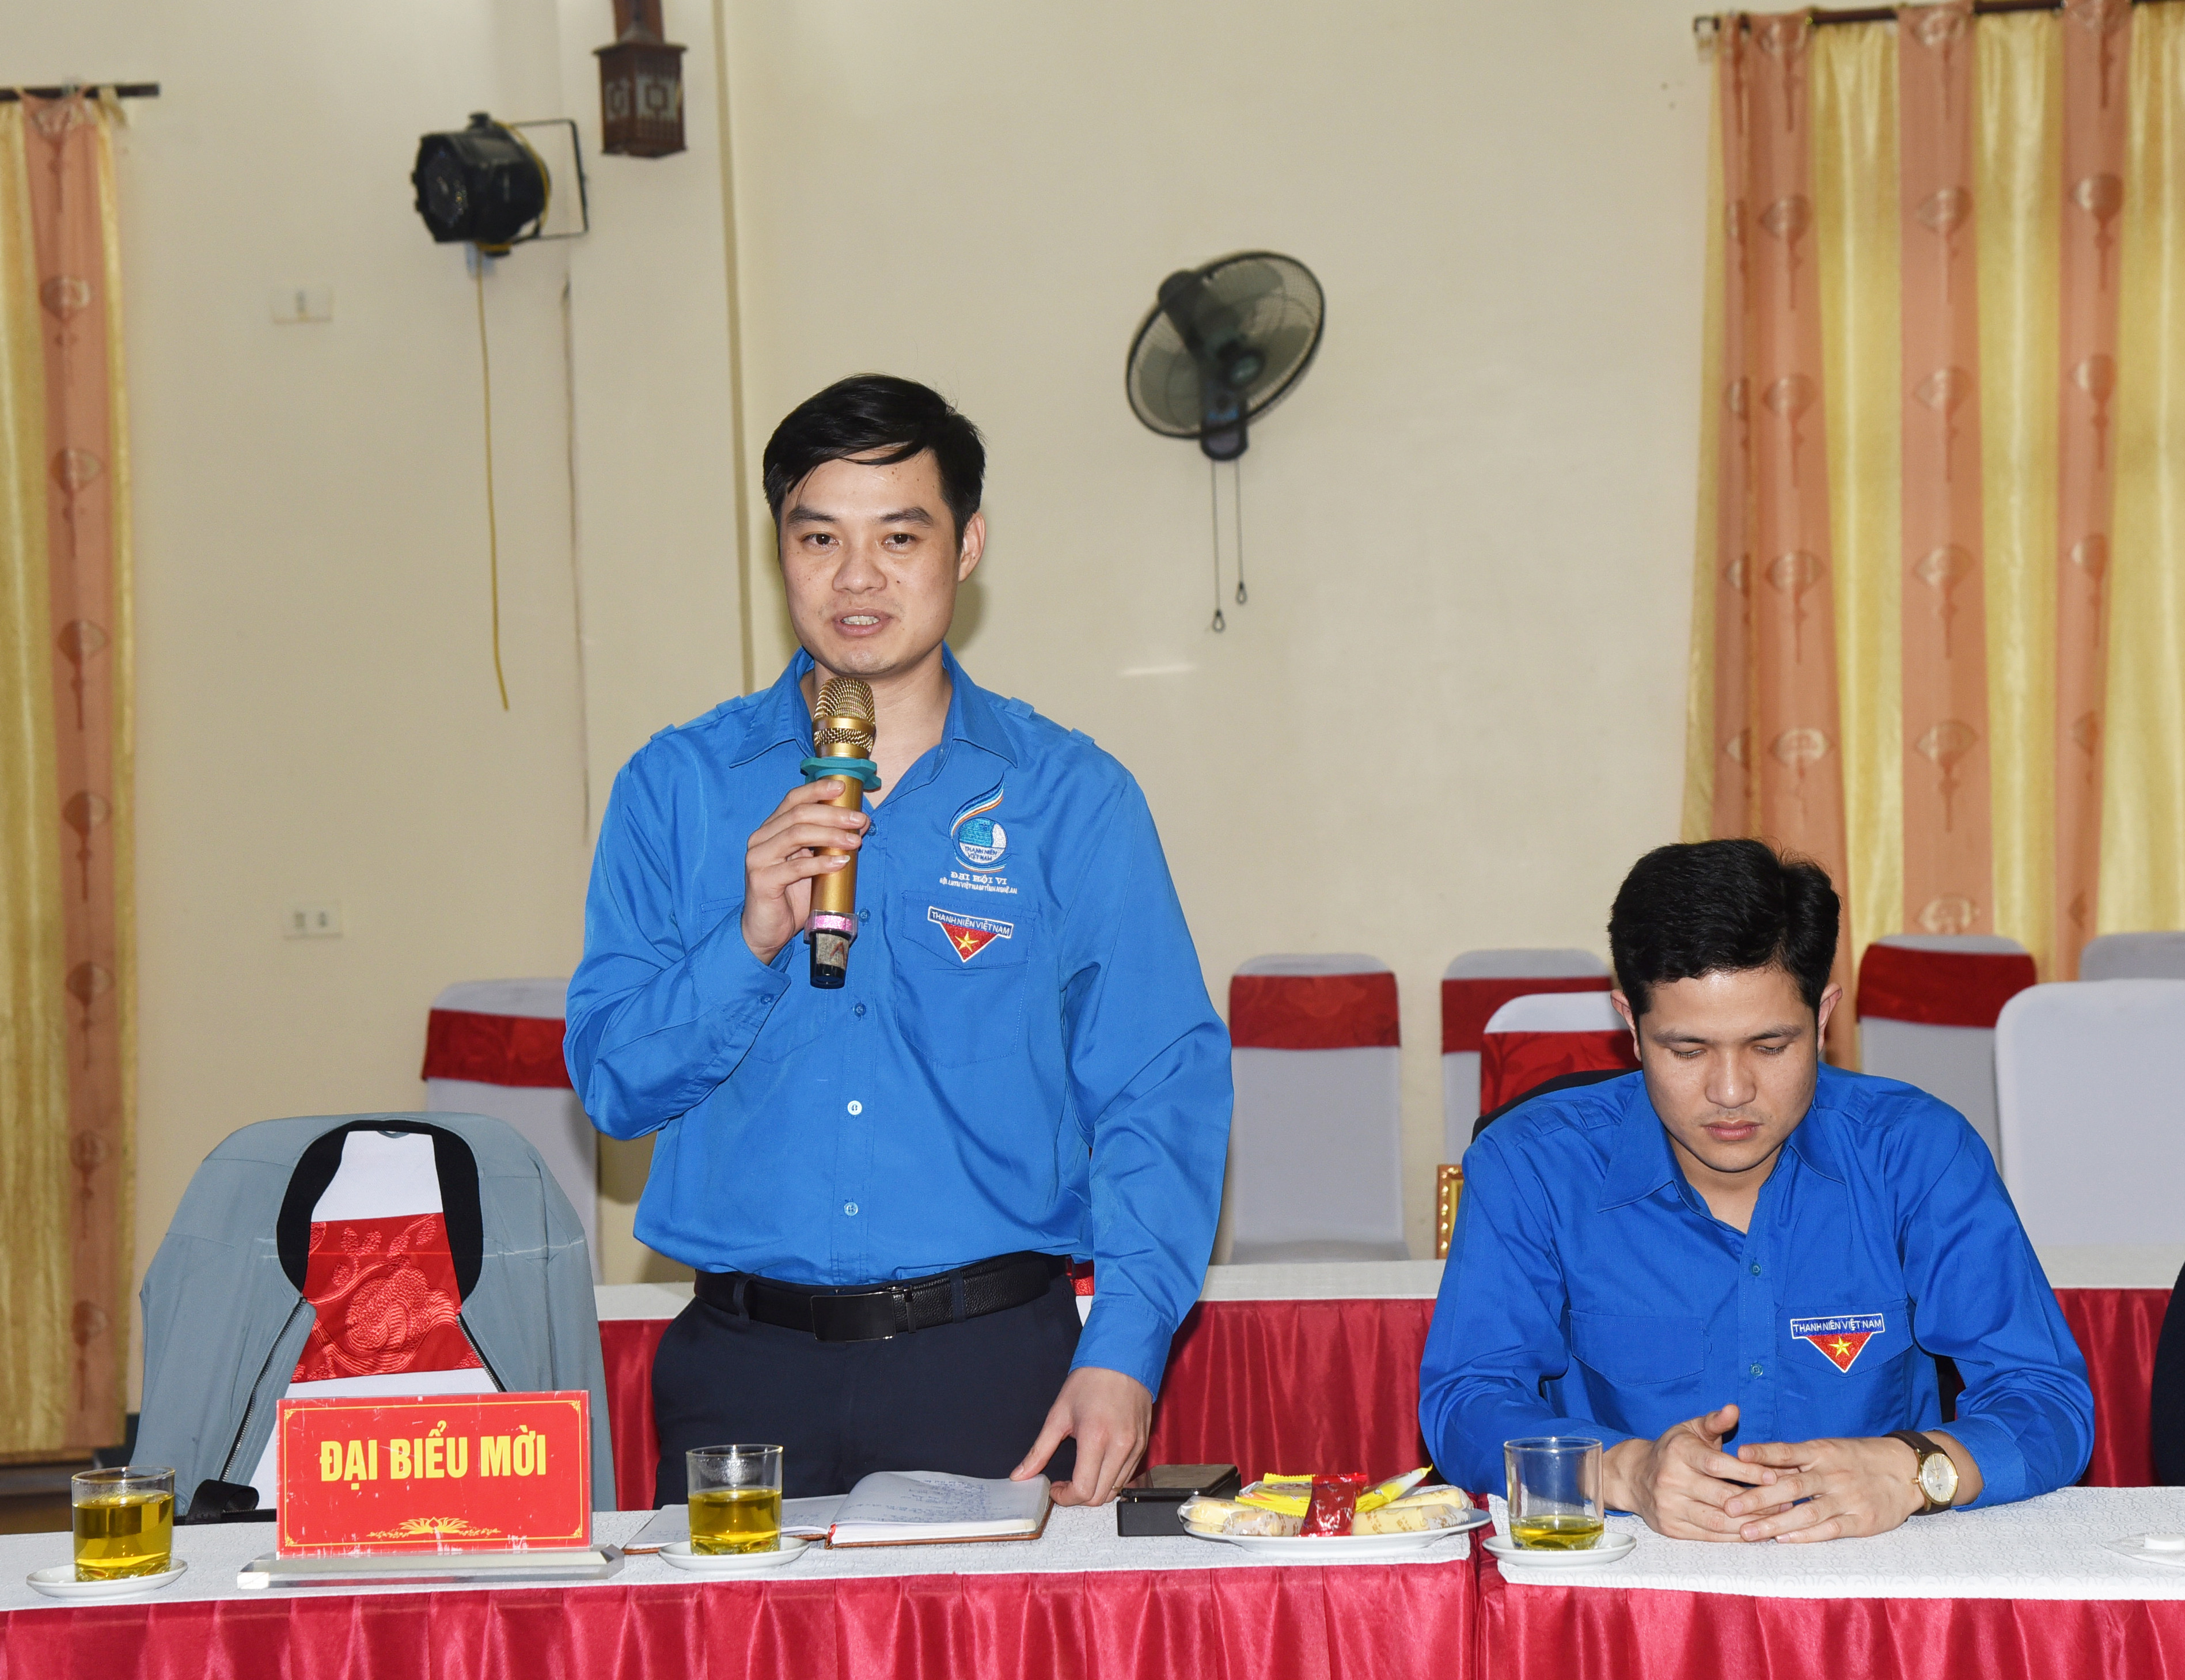 Đồng chí Nguyễn Hồ Phước - Chánh Văn phòng Tỉnh đoàn trao đổi tại hội nghị. Ảnh: TG